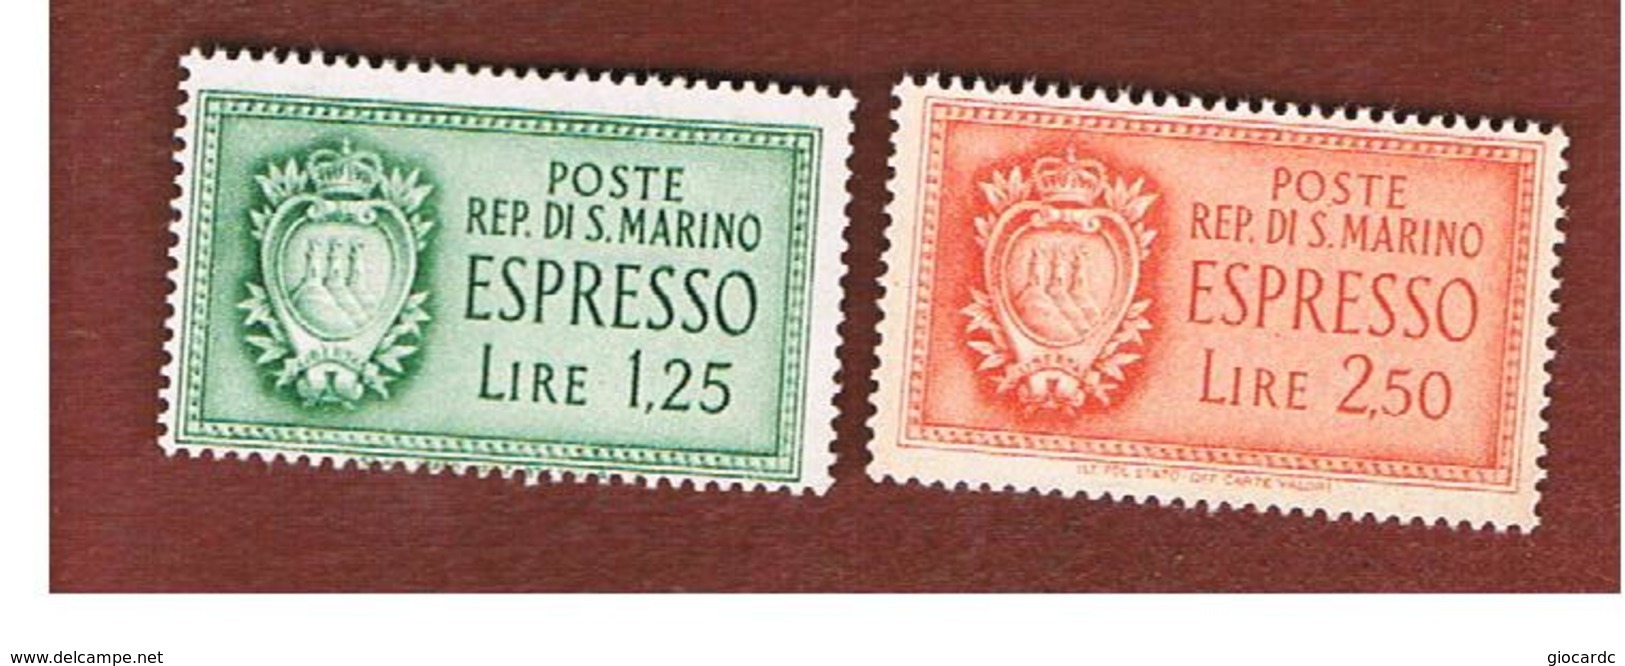 SAN MARINO - UNIF. E9.E10 ESPRESSO - 1943 STEMMA (SERIE COMPLETA DI 2) -  MINT** - Francobolli Per Espresso